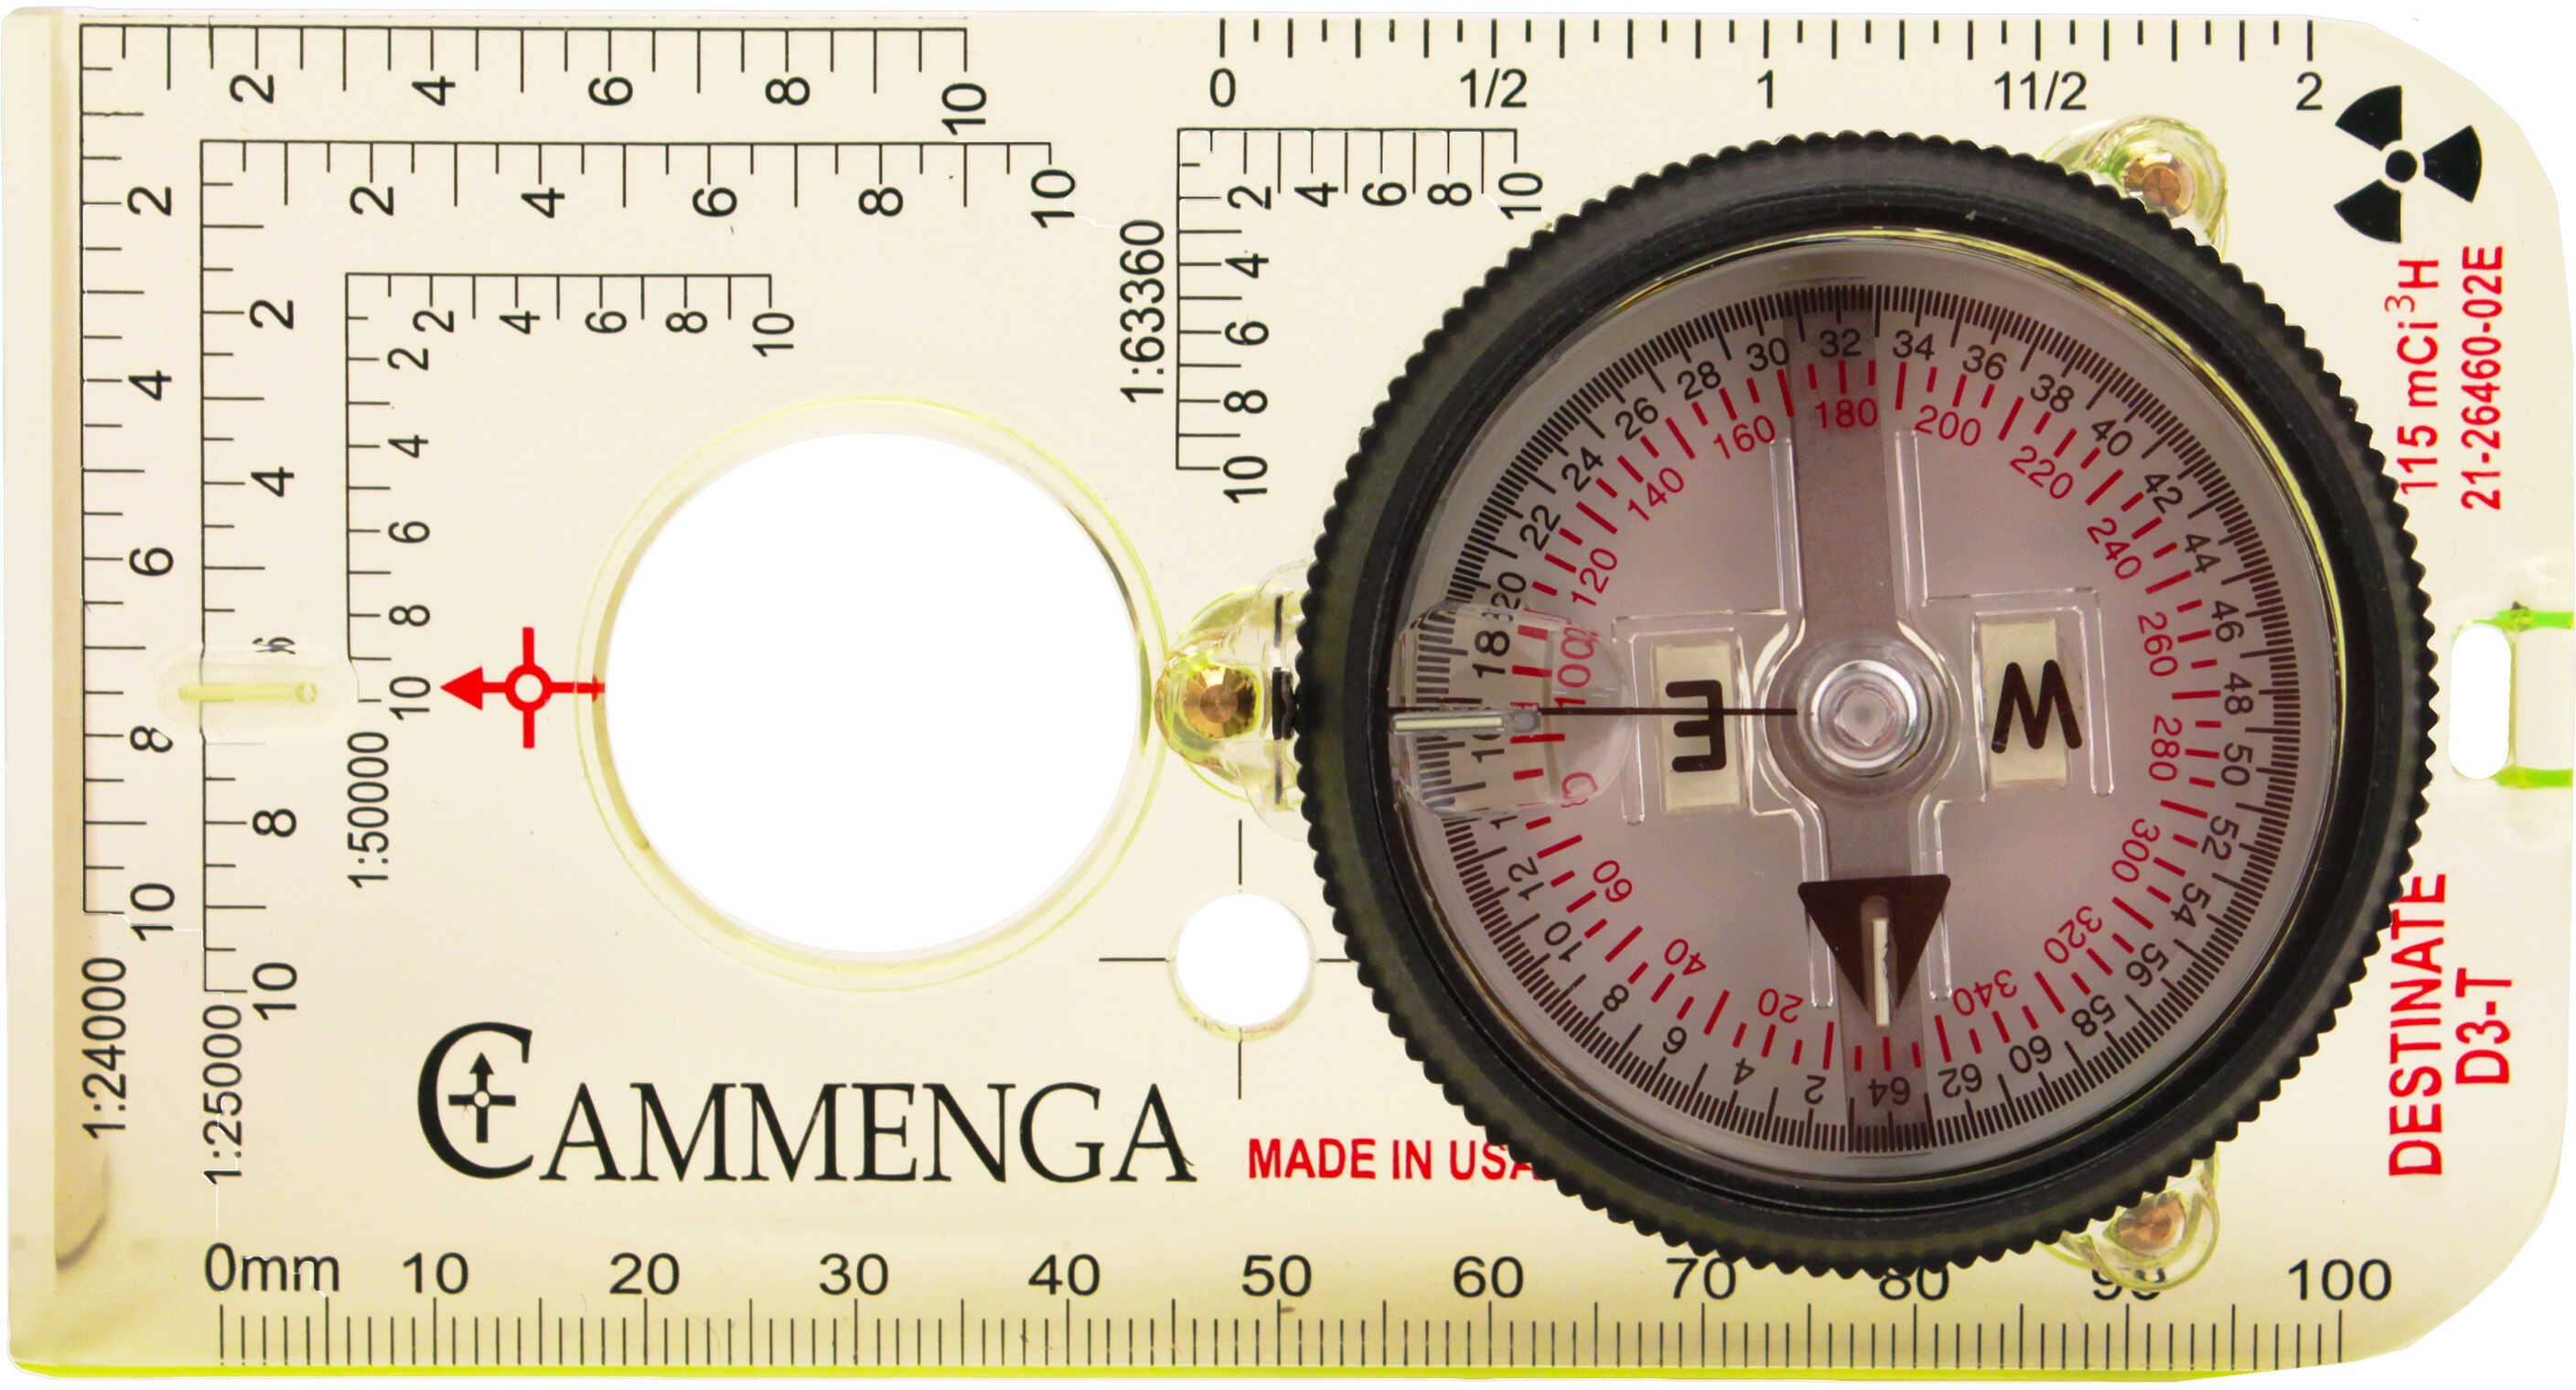 Cammenga Destinate Model Tritium Protractor Compass Box Md: D3-T